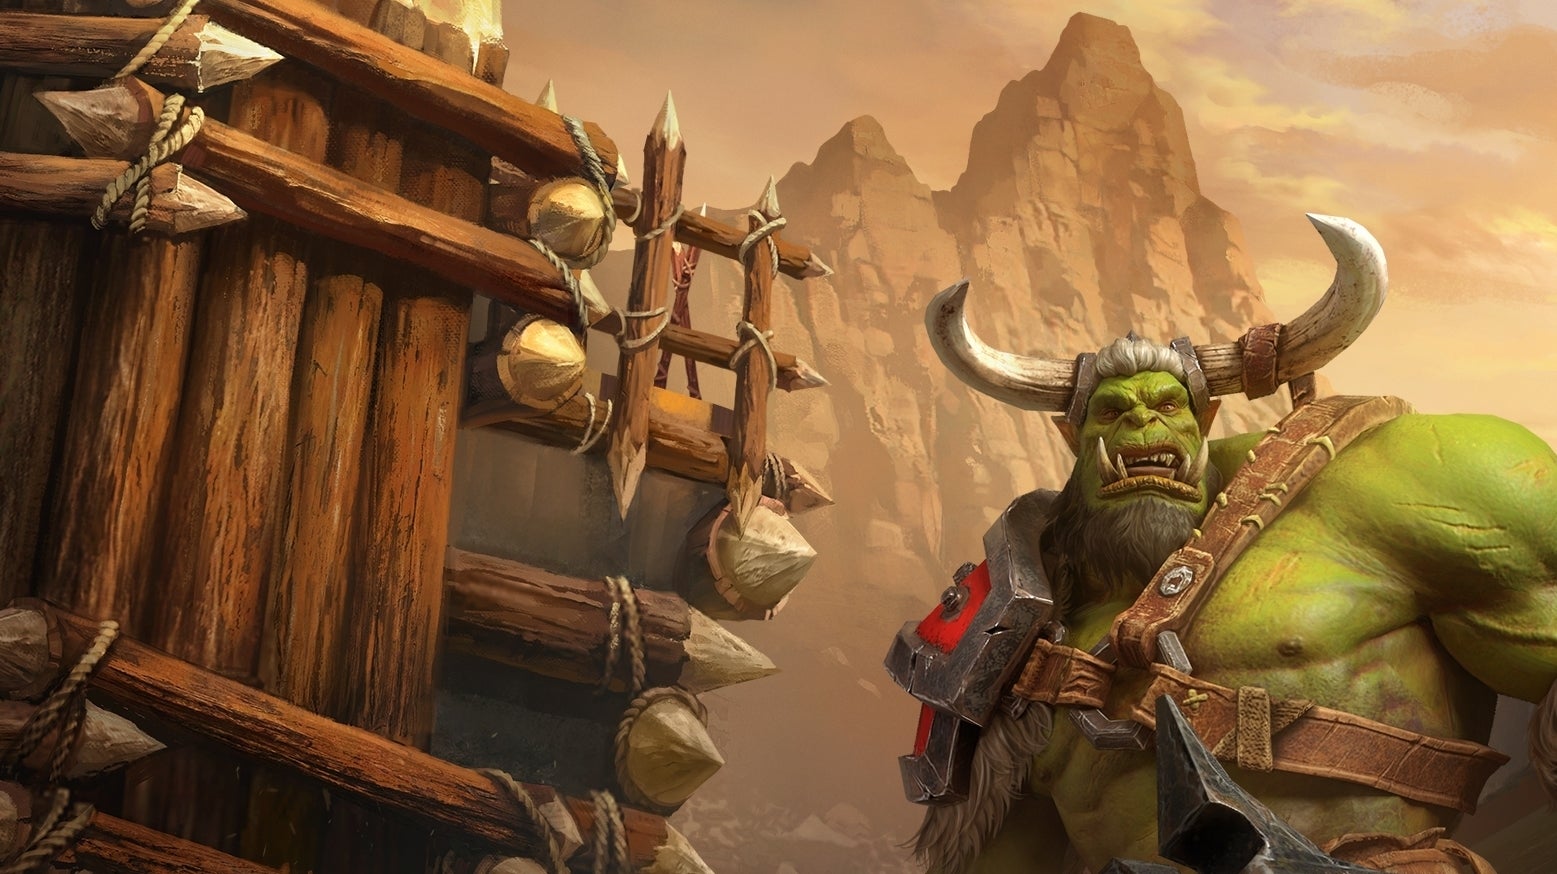 Image for Pořiďte si nové PC, radí Blizzard po vynuceném upgradu starého Warcraftu 3